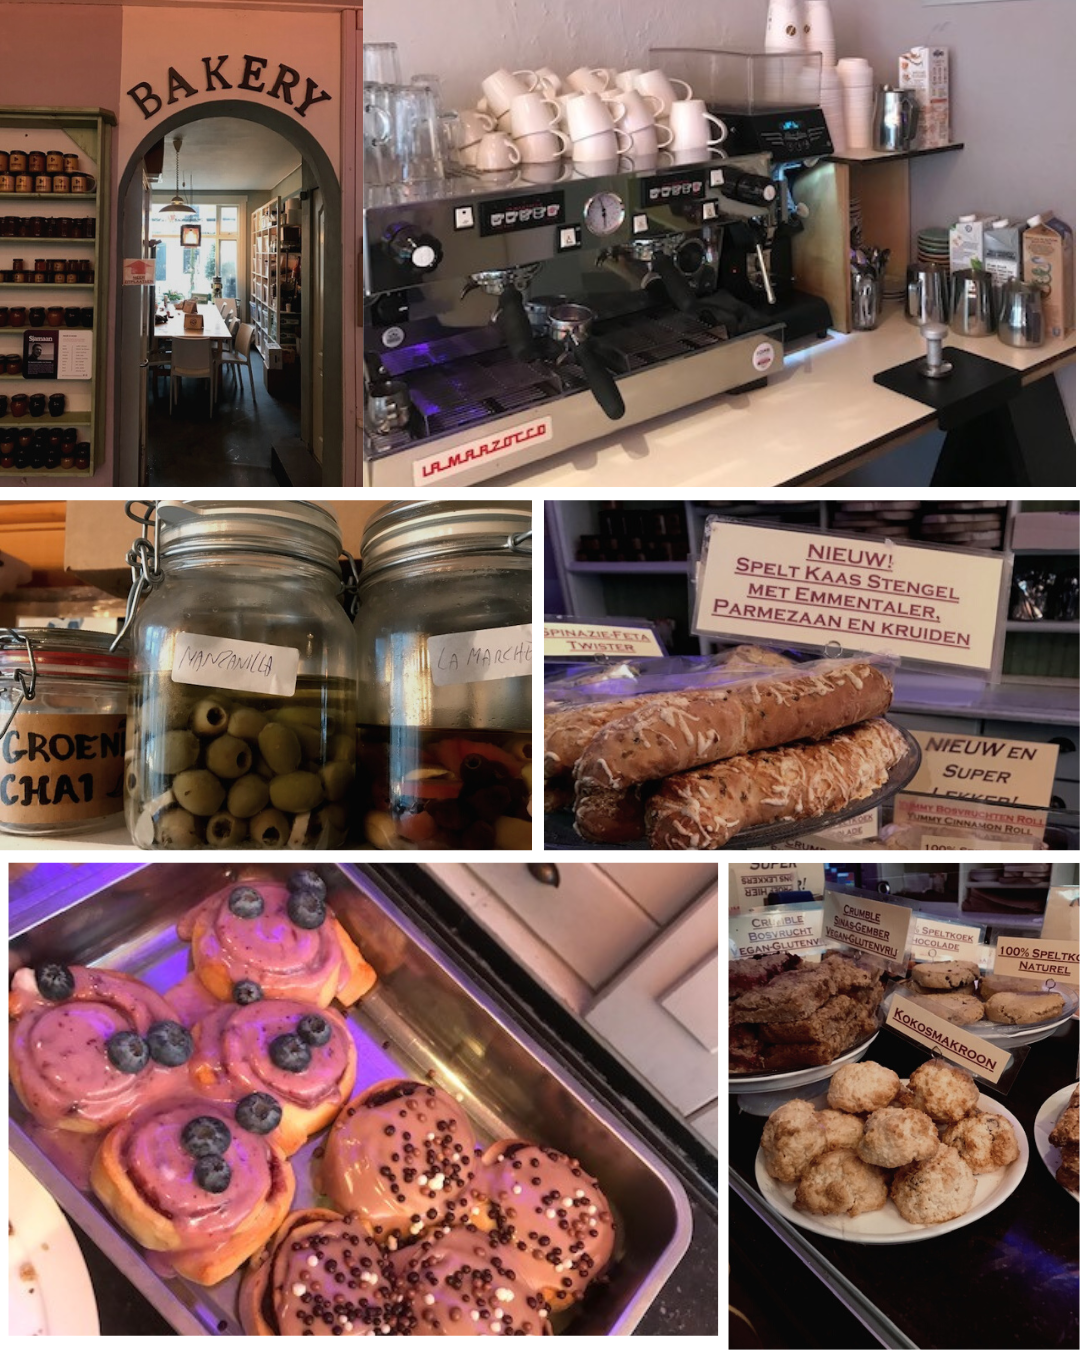 Corazon Bakery in Amersfoort